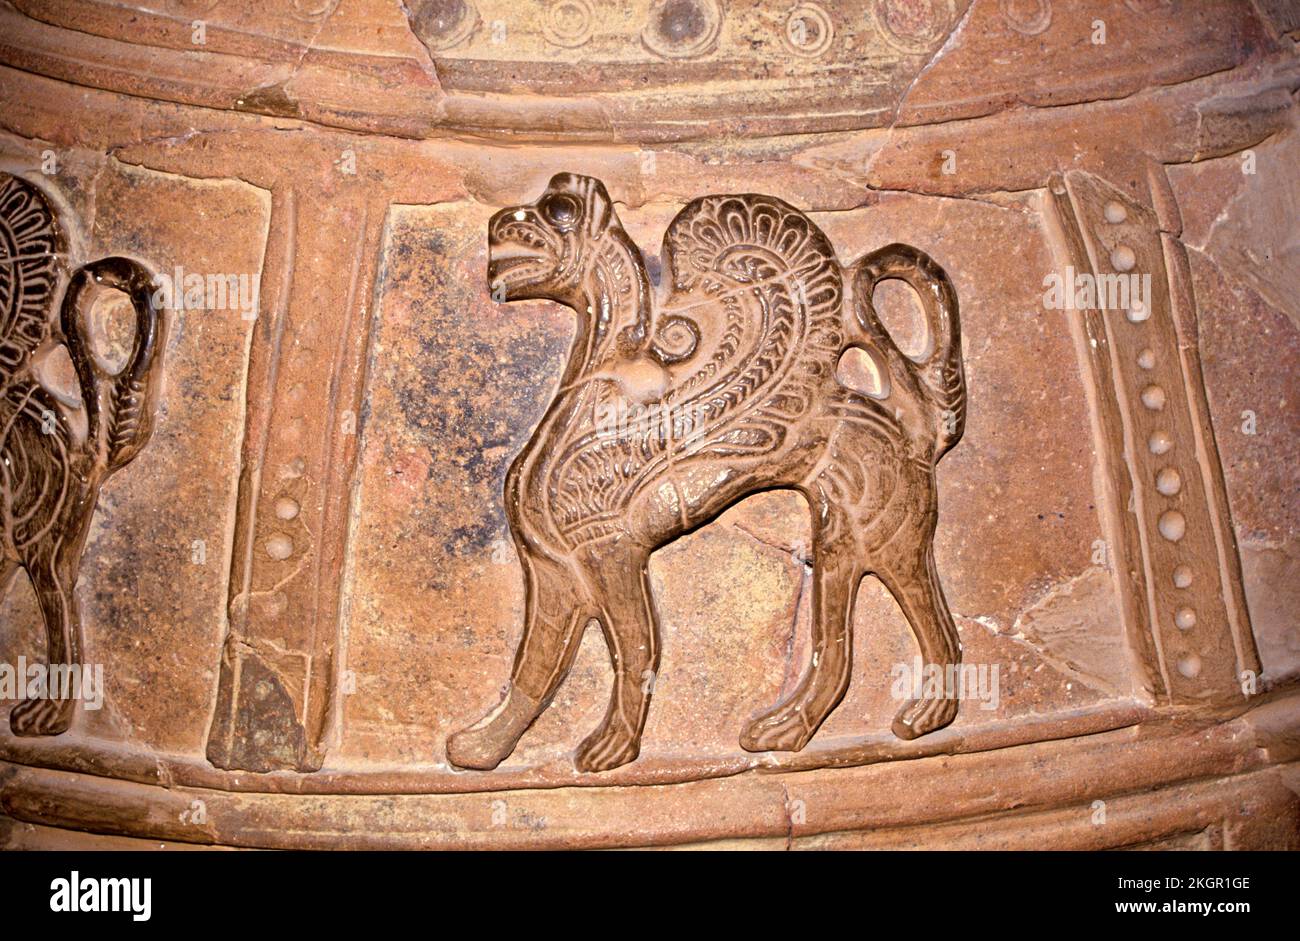 Ein Greif, in eine Urne in der alten Stadt Knosses gehauen. Griffins waren wichtige mythologische Kreaturen in Griechenland und in der minoischen Kultur. Stockfoto